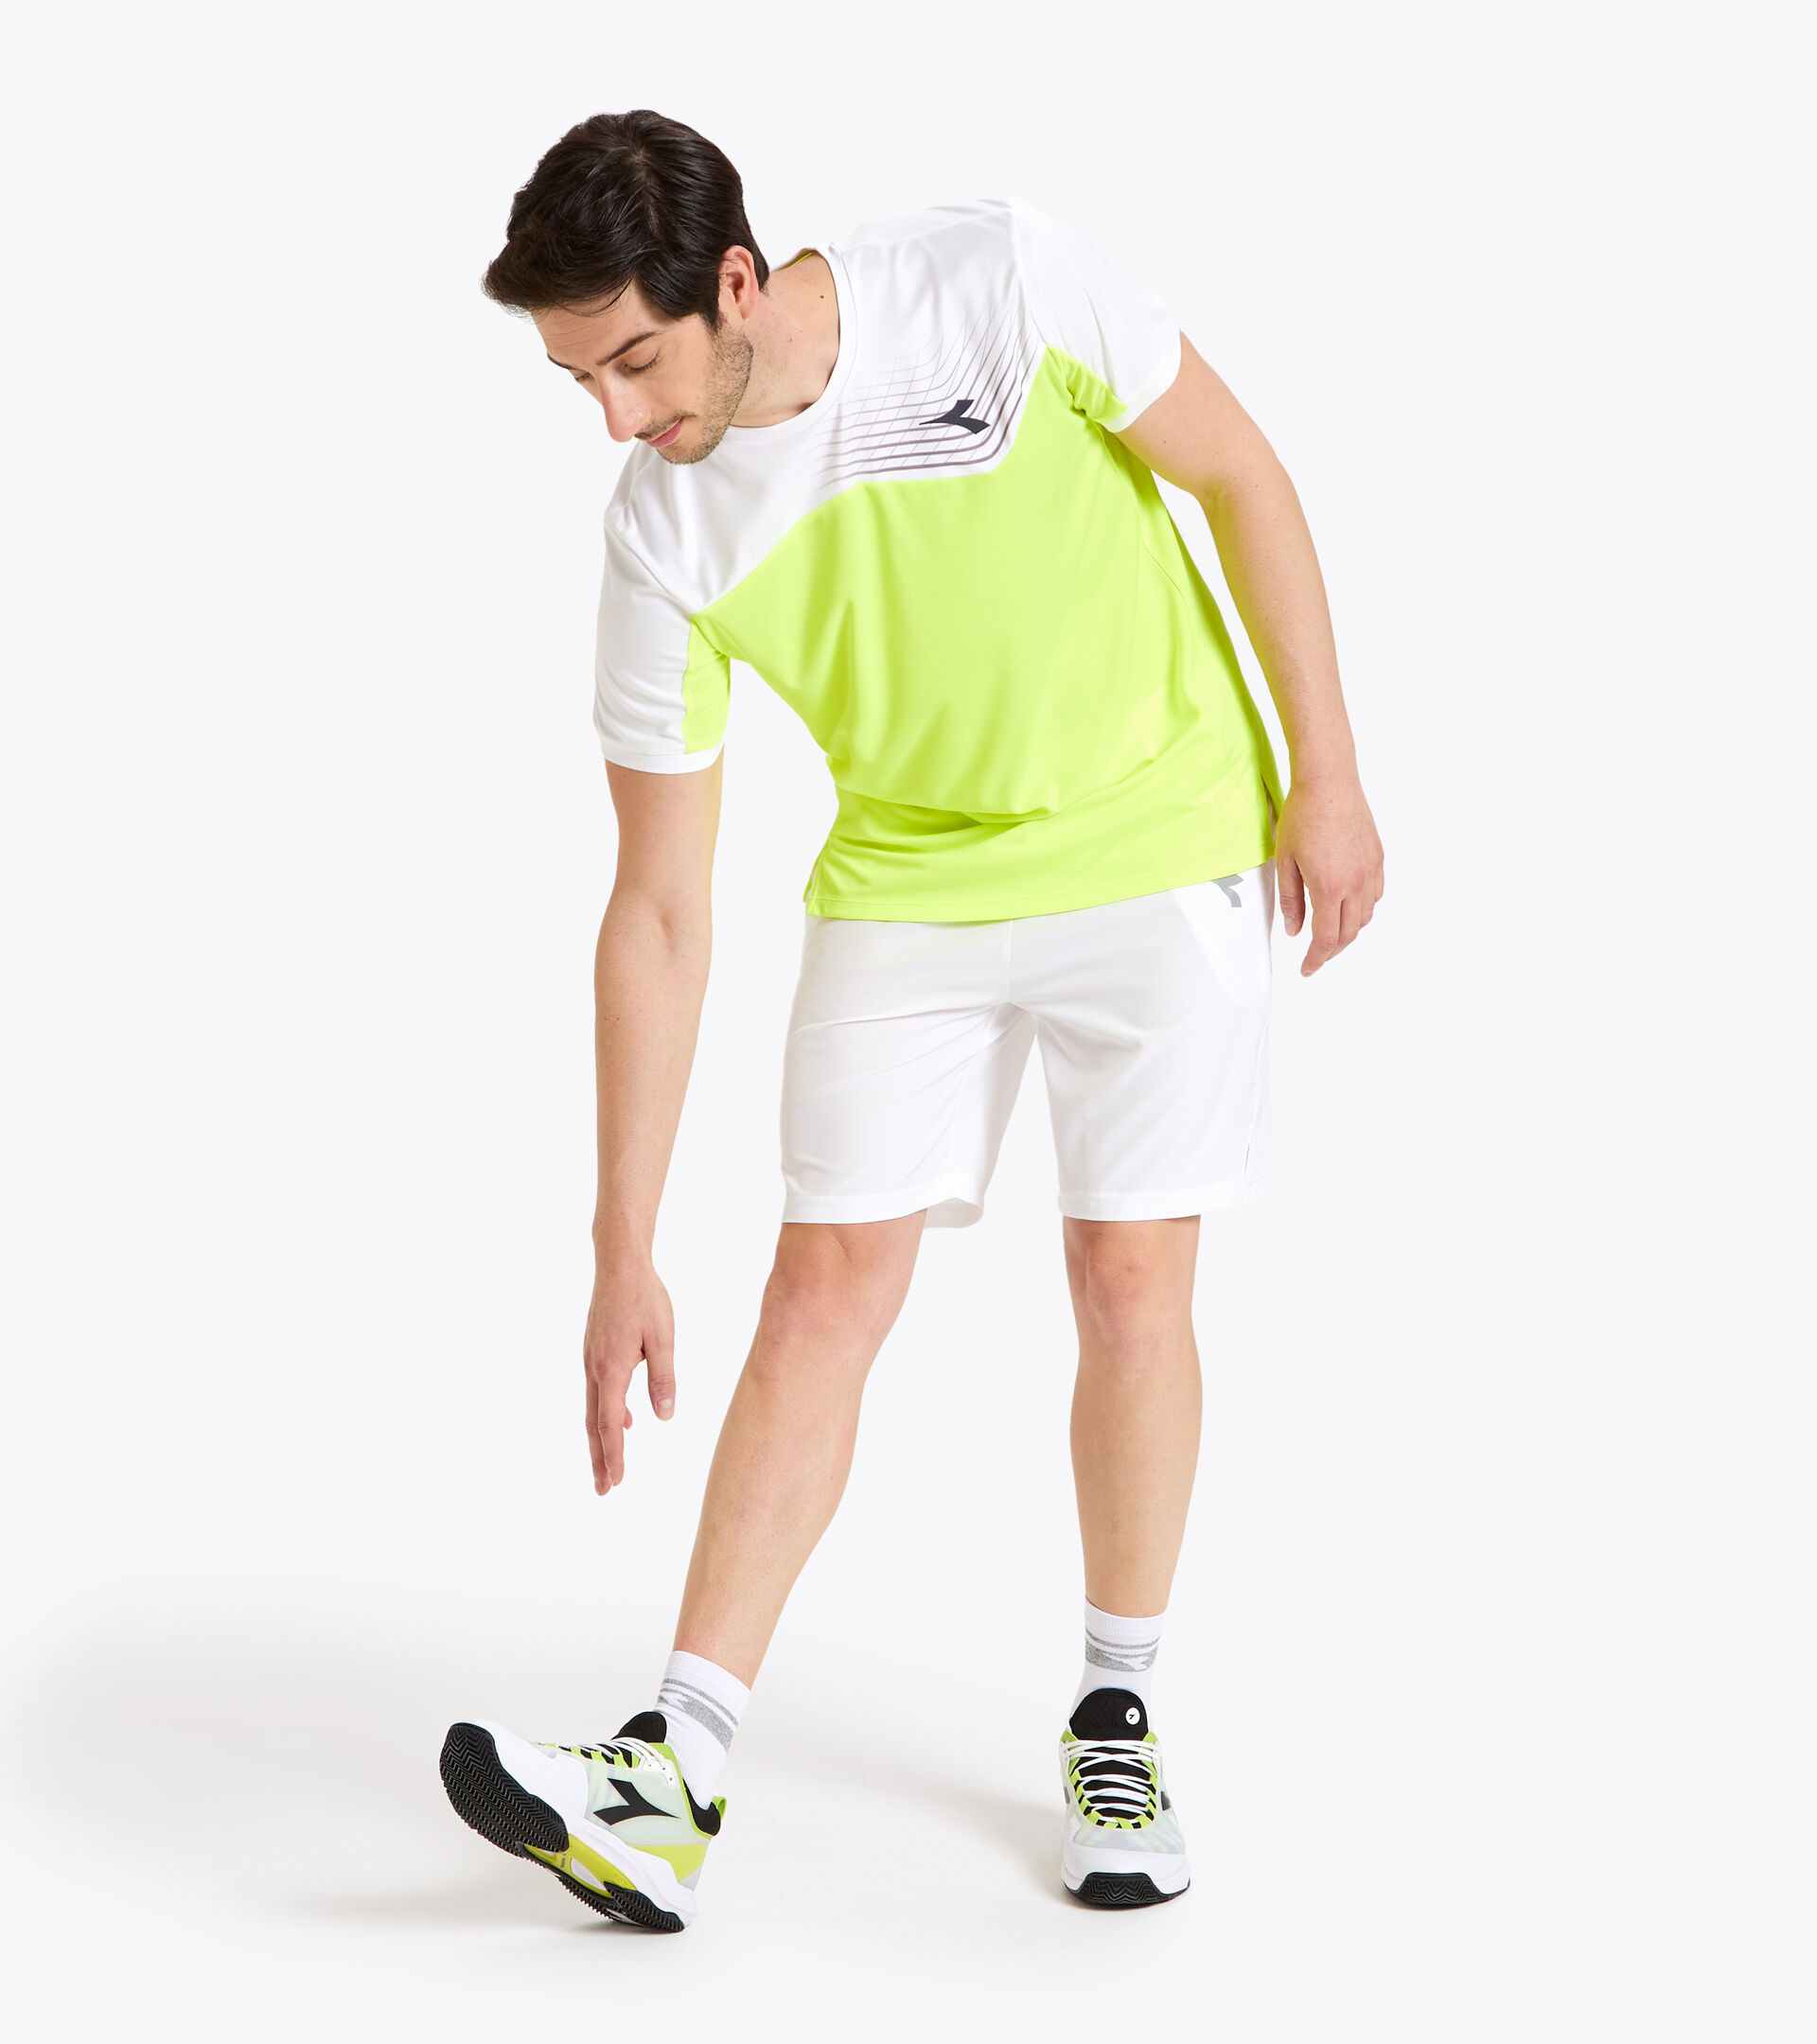 Tennis-T-Shirt - Herren T-SHIRT COURT FLUO GELB DD - Diadora